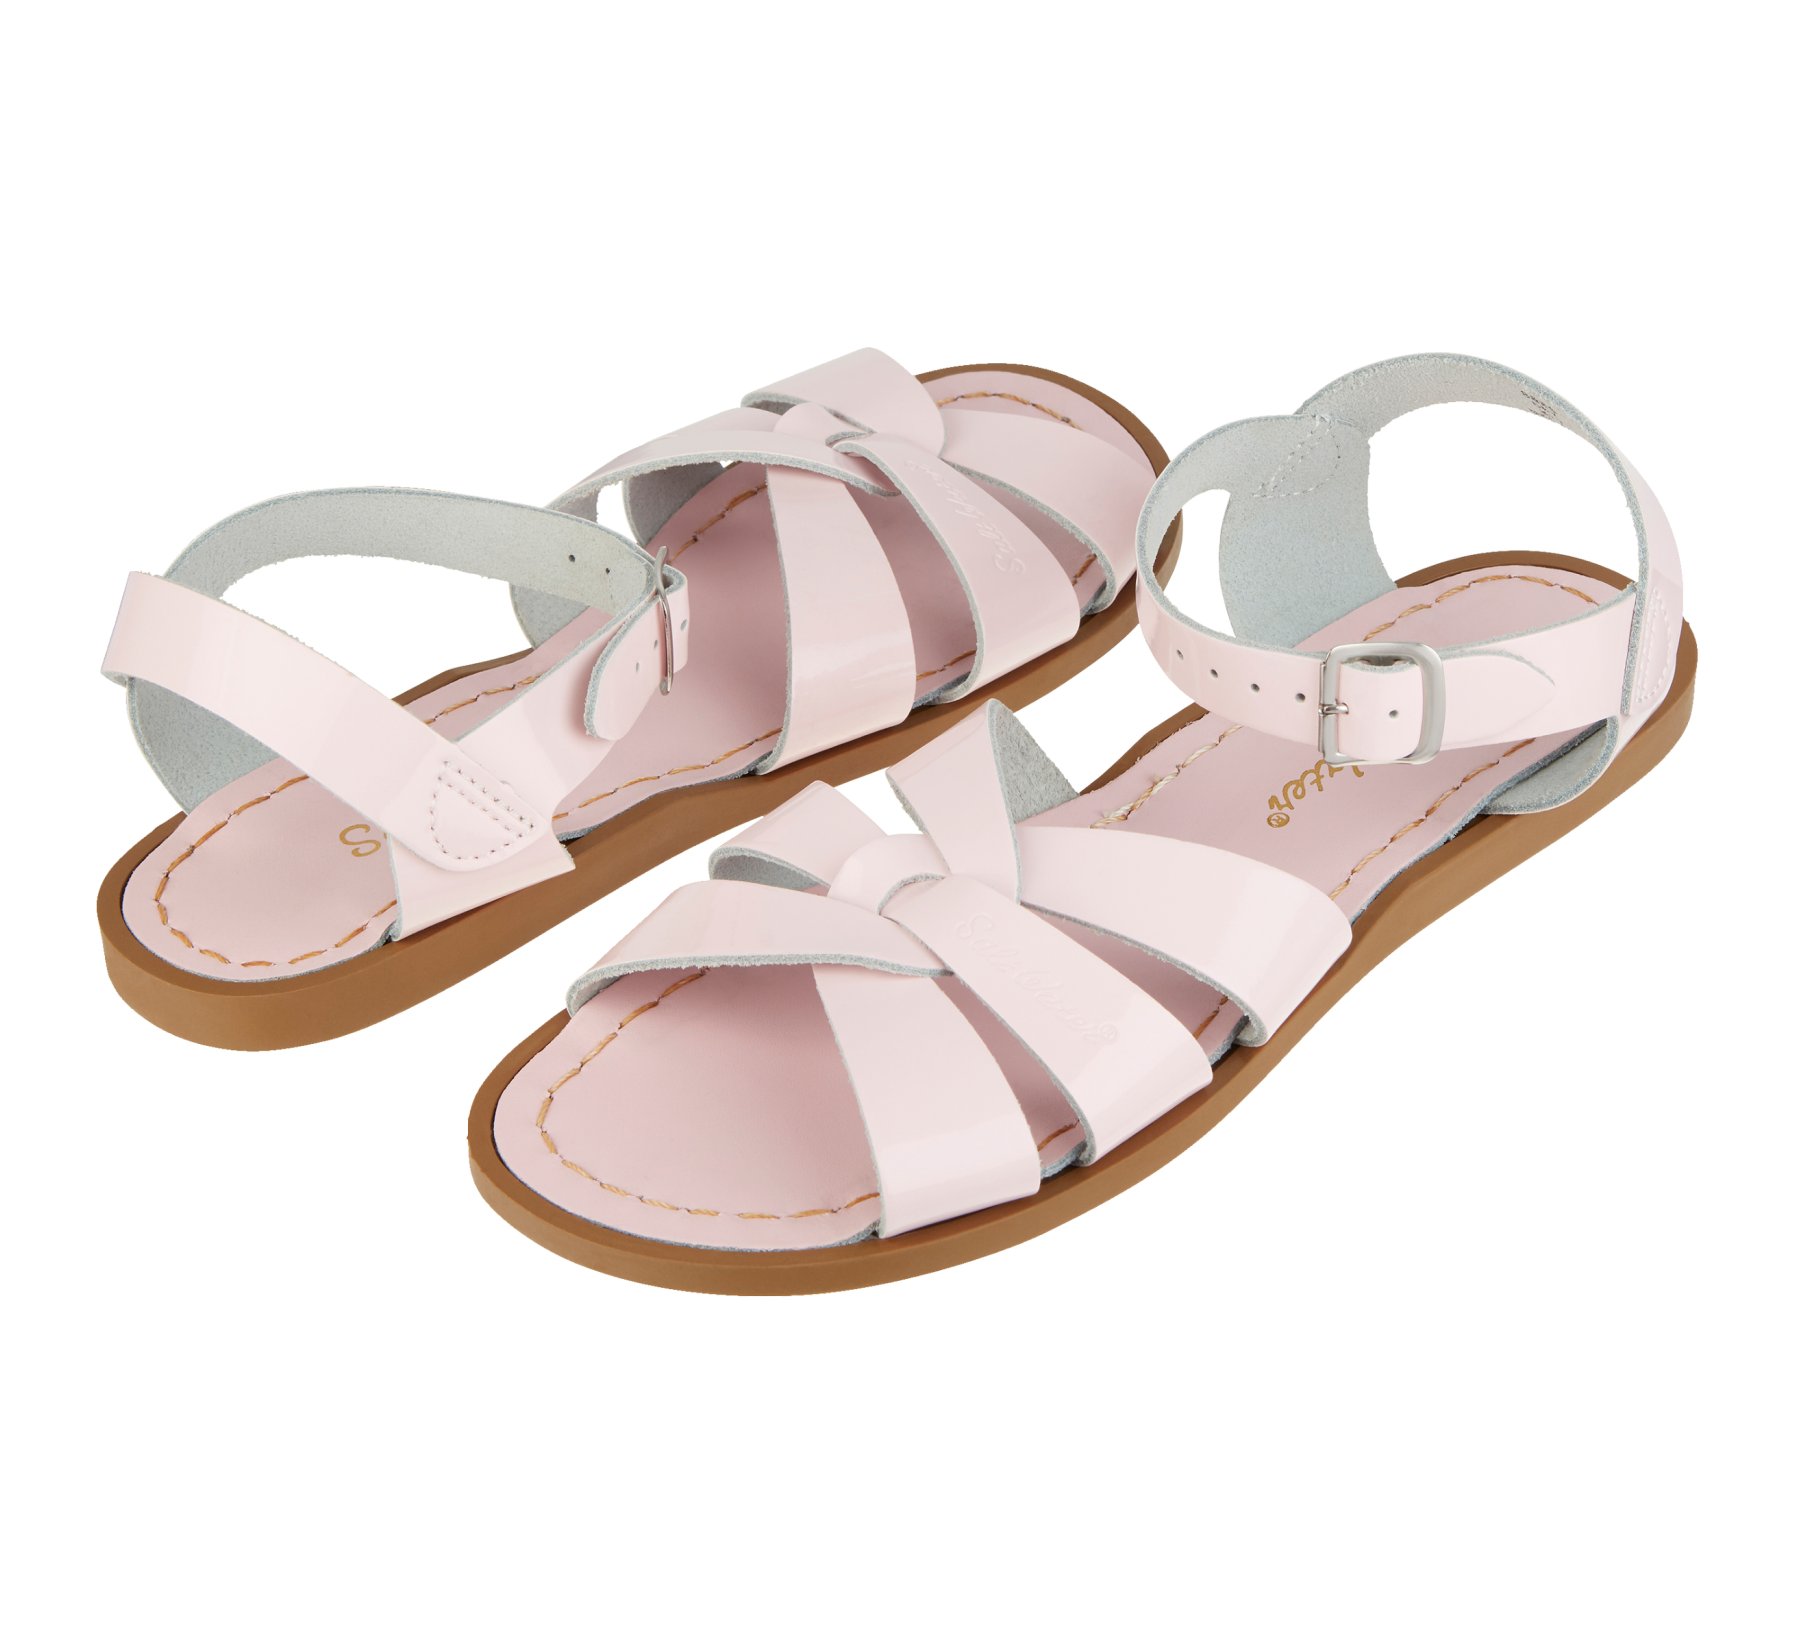 by Hoy Shoe Surfer Shiny Pink Sandal Salt Water Sandals 1788-PINK 